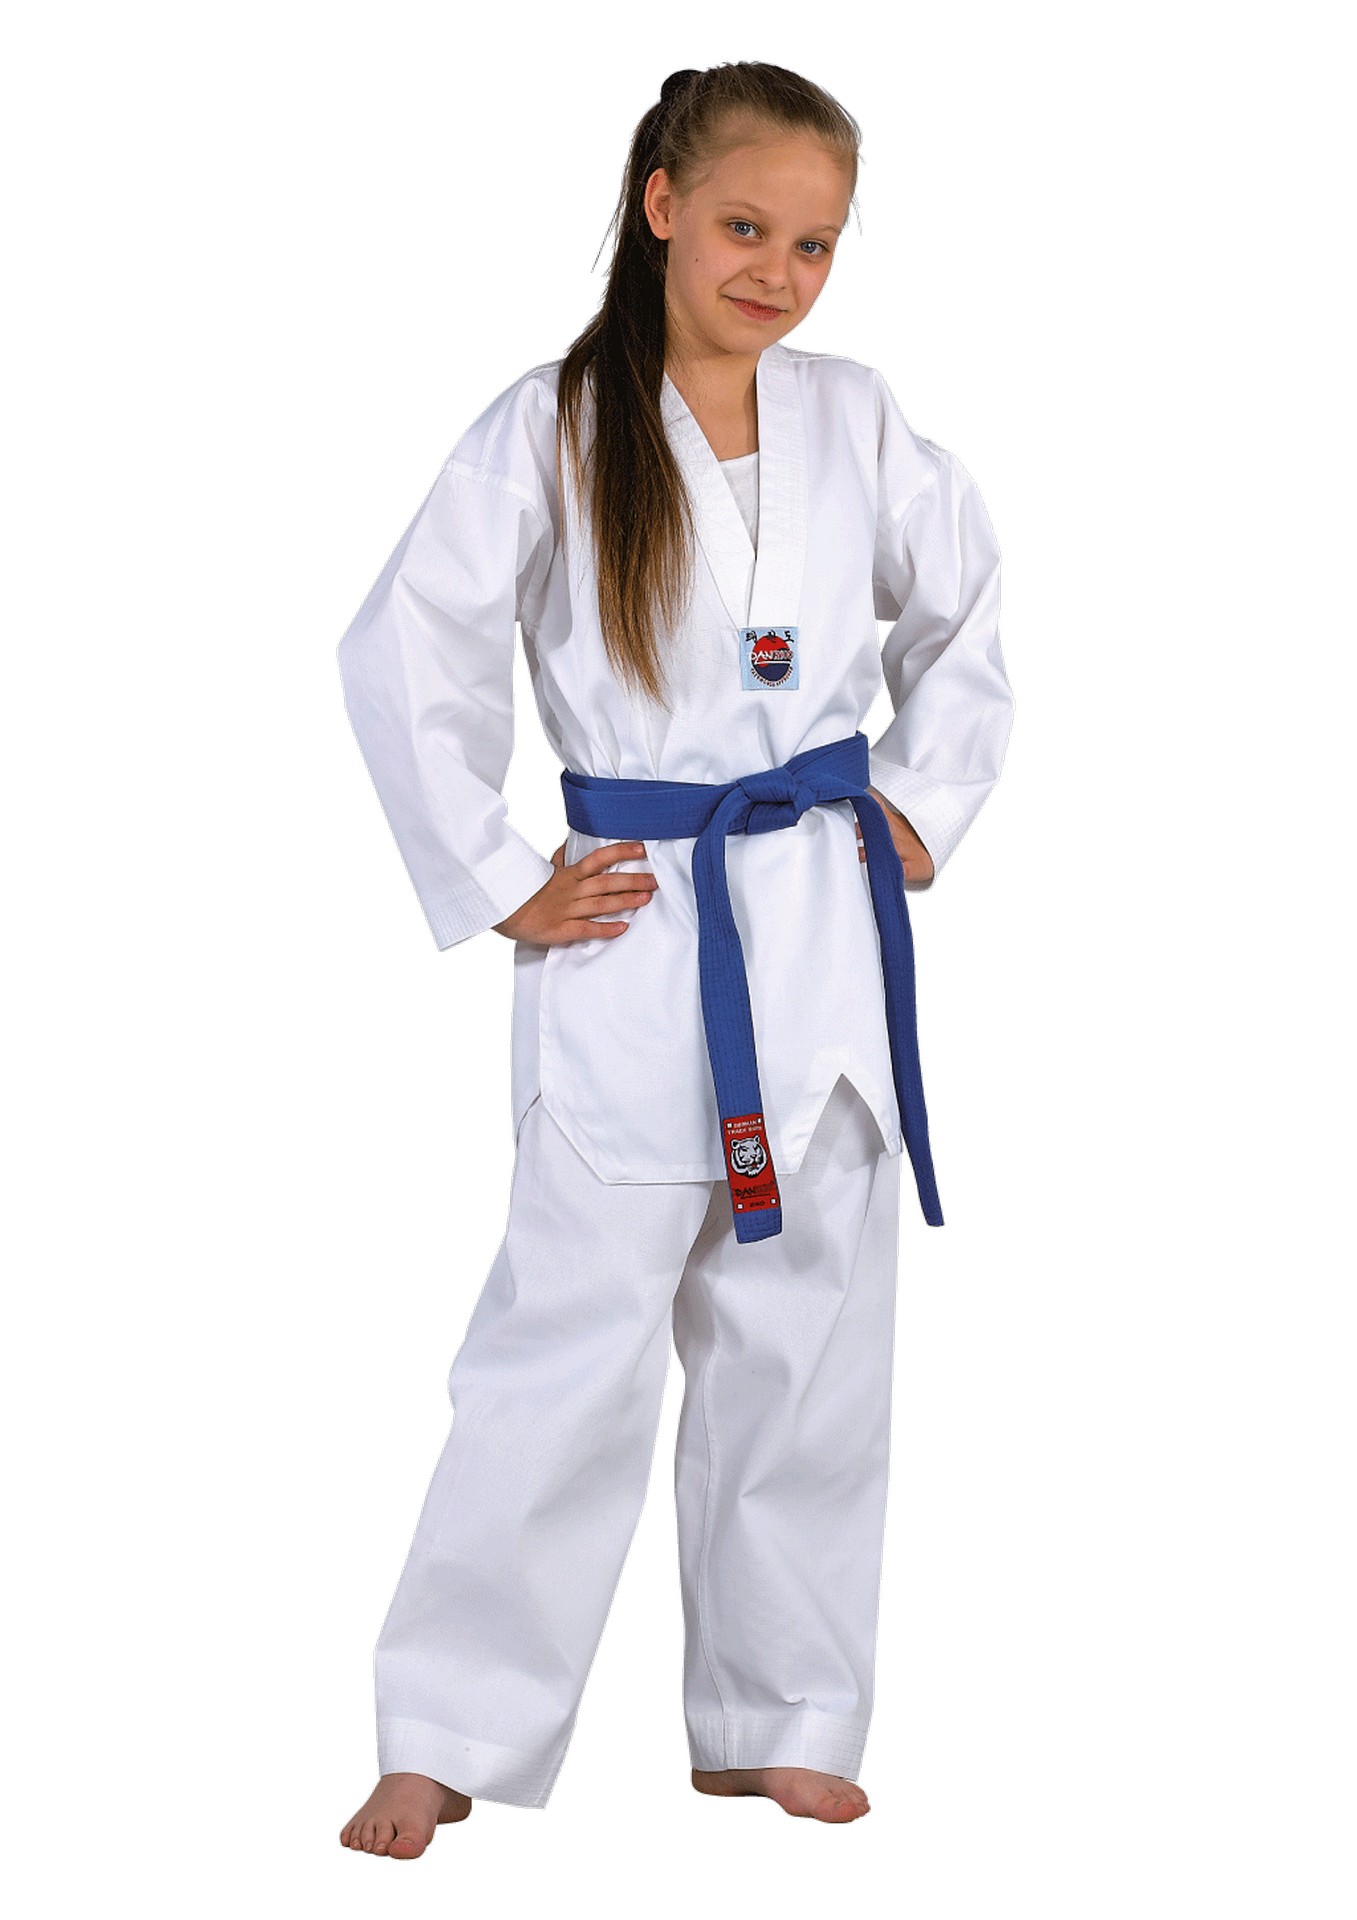 Dojo-Line Taekwondo Dobok